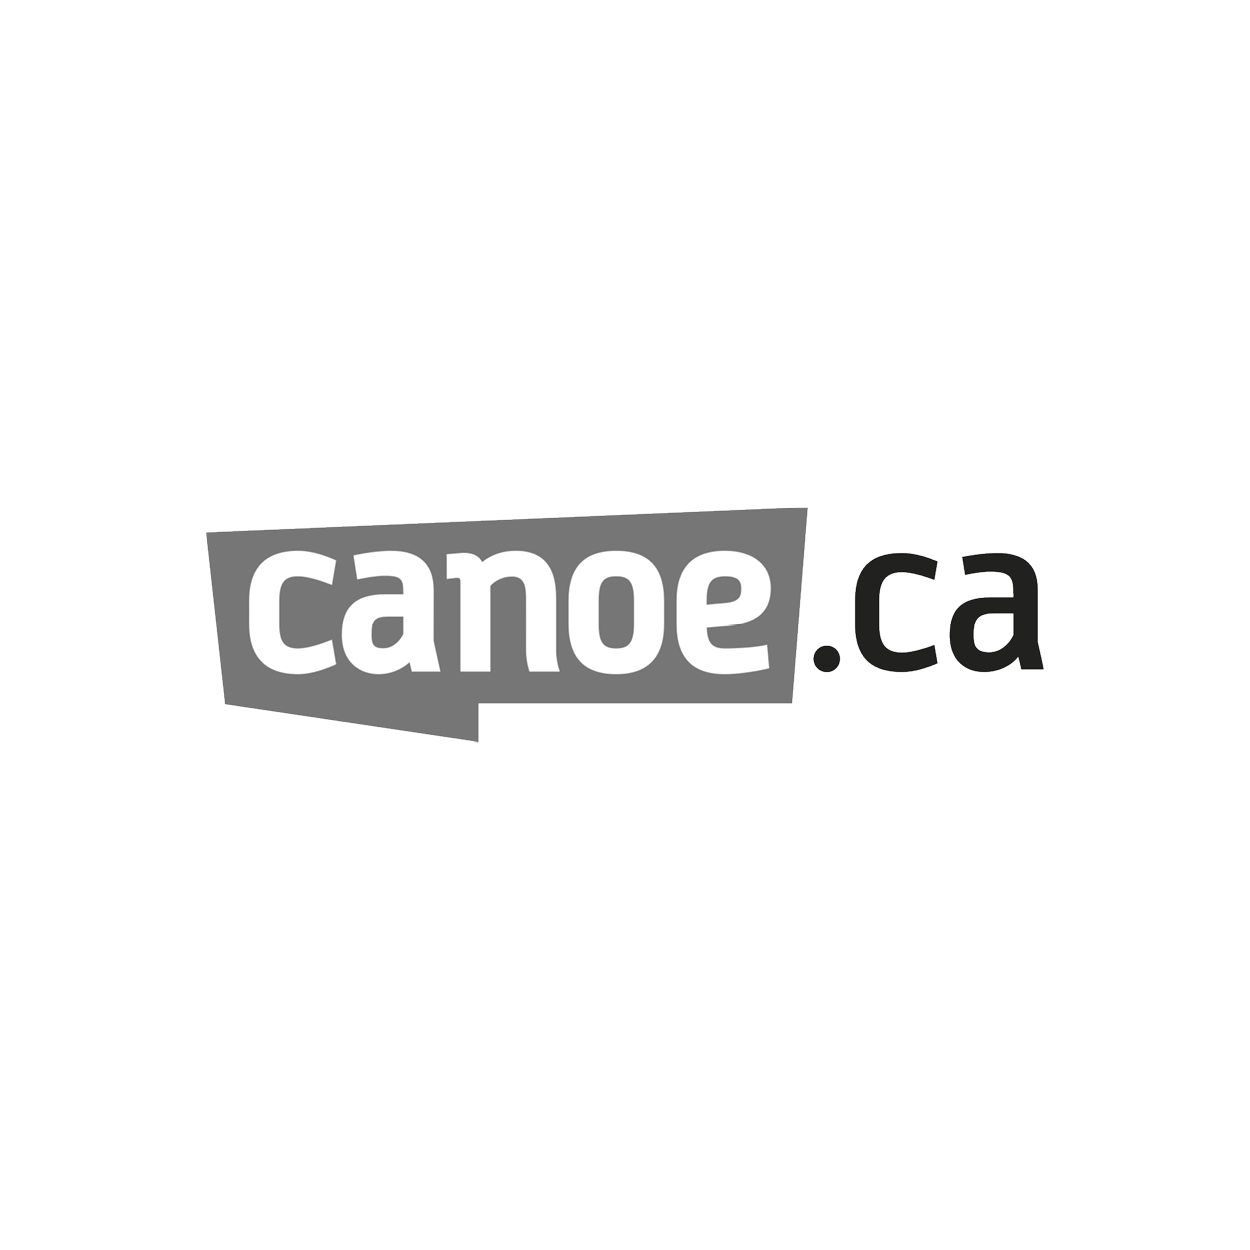 Canoe.ca